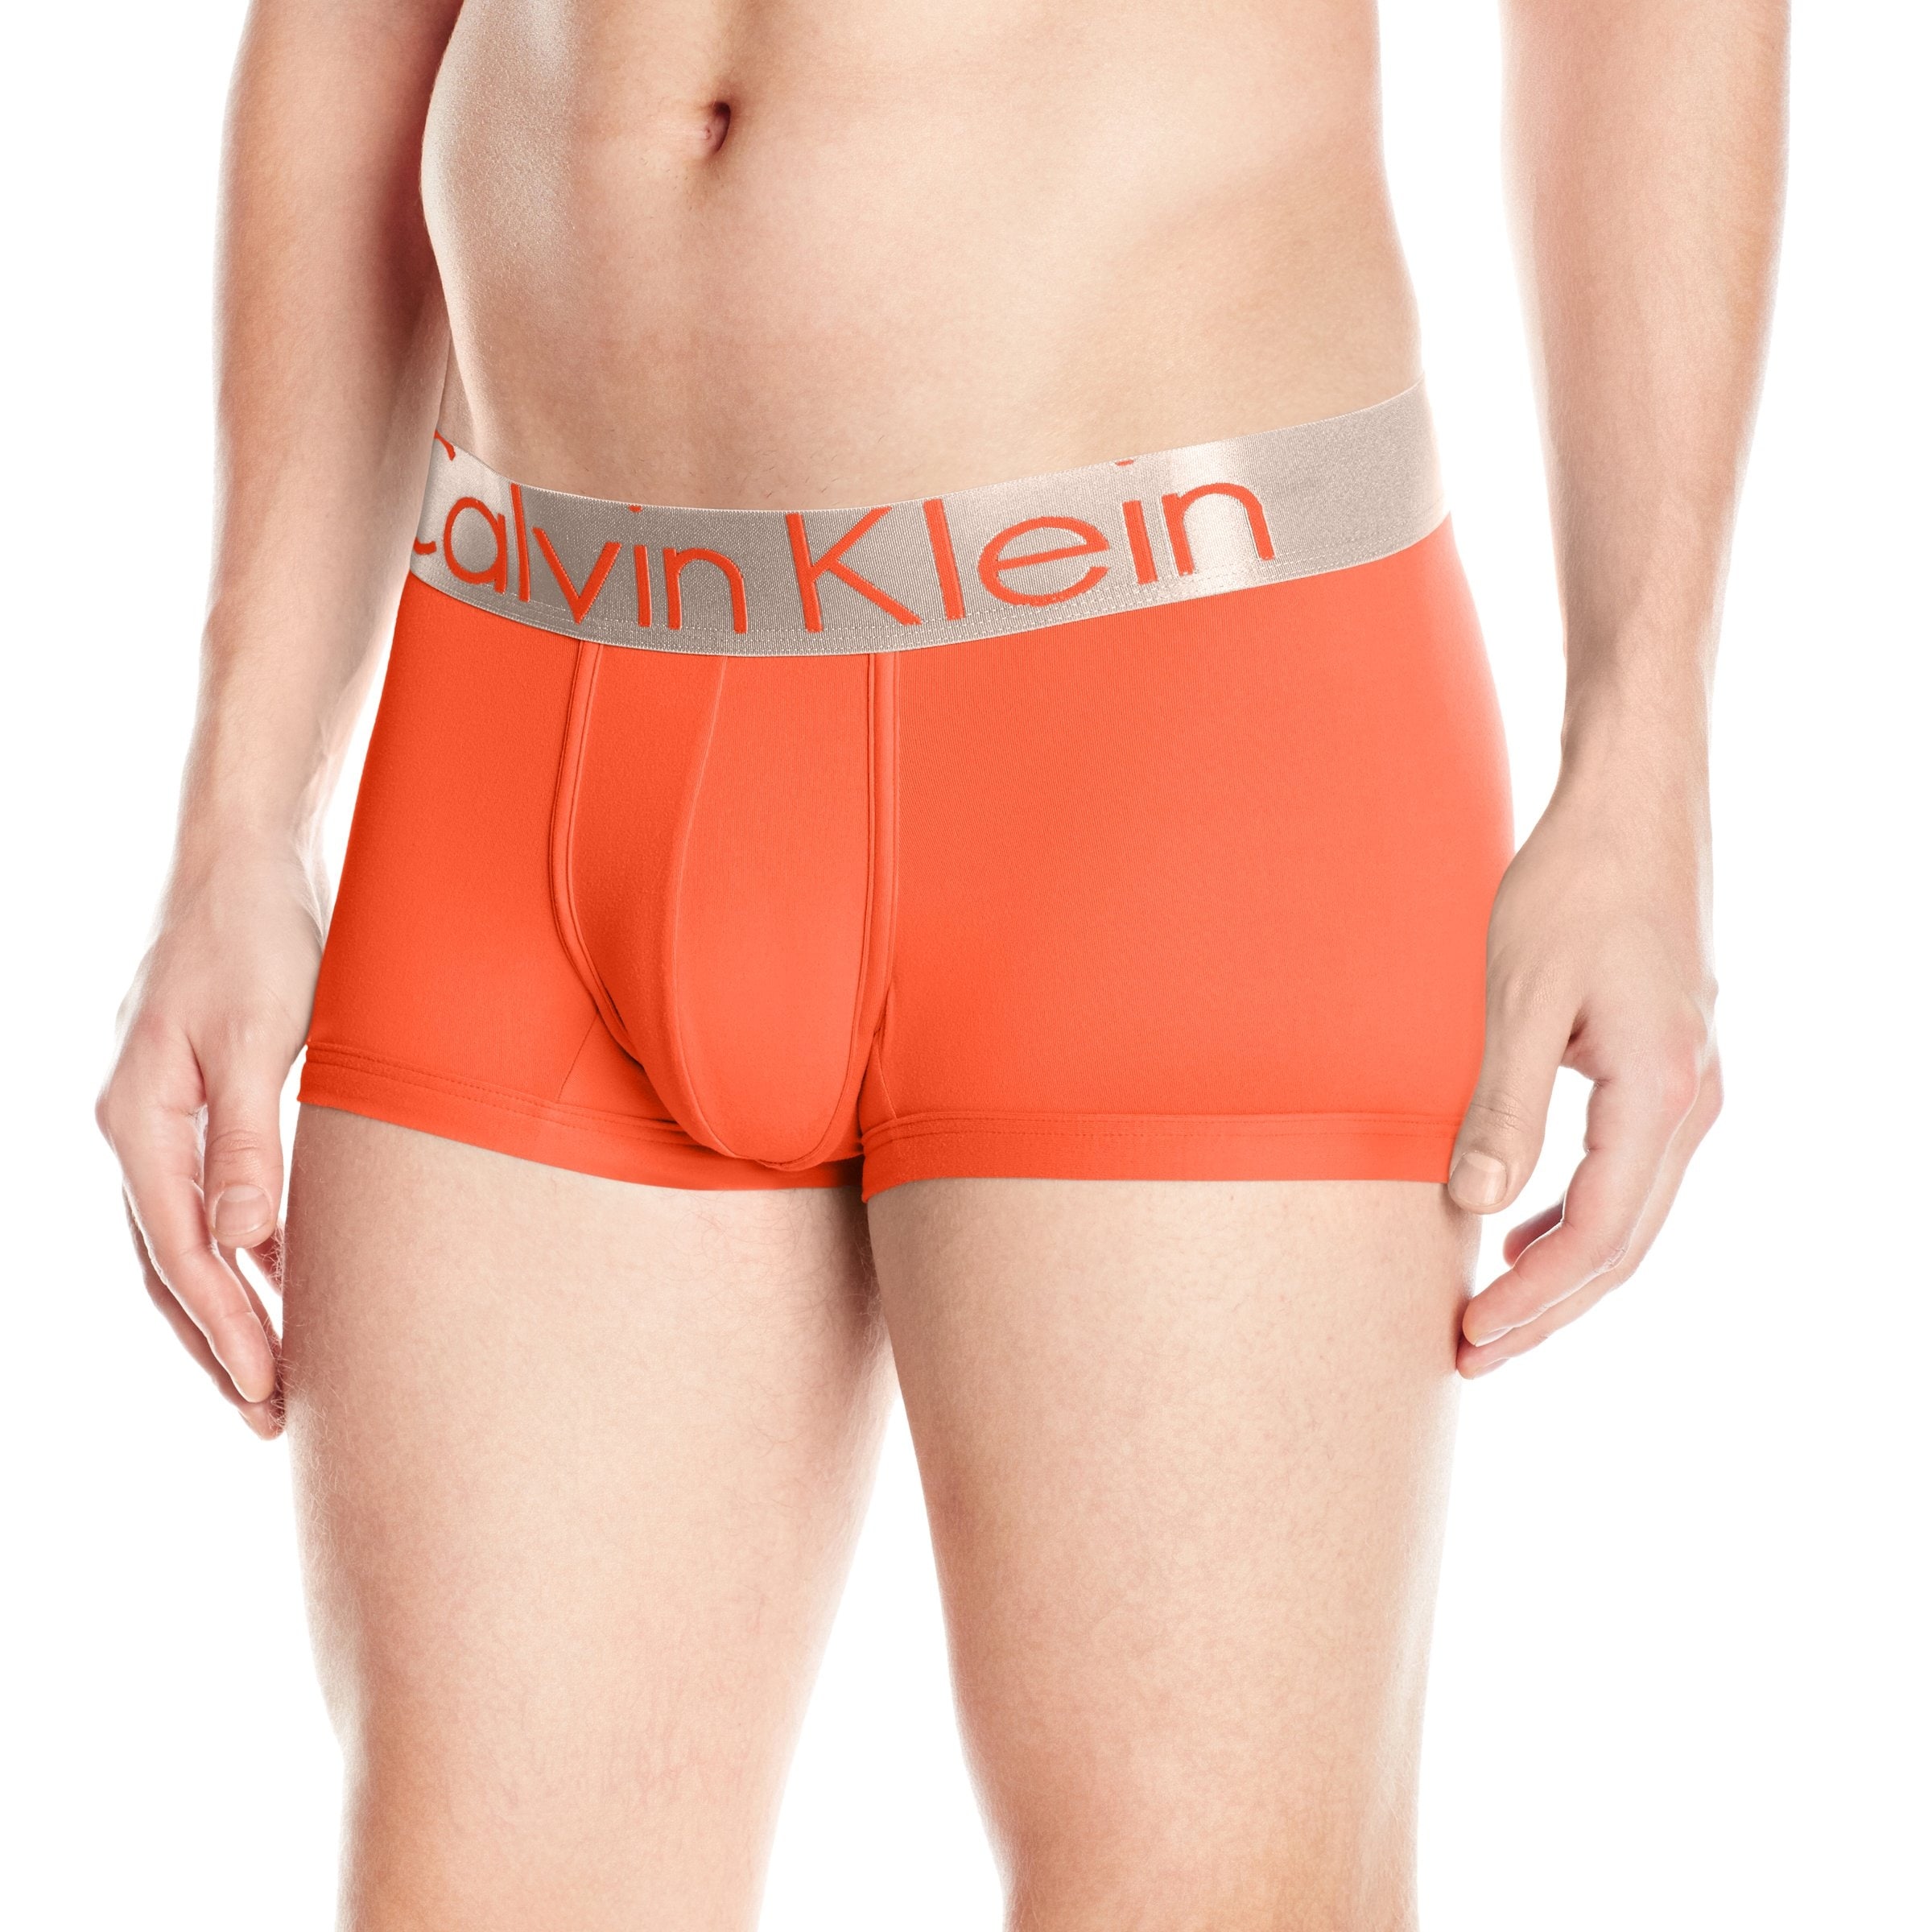 calvin klein orange boxers